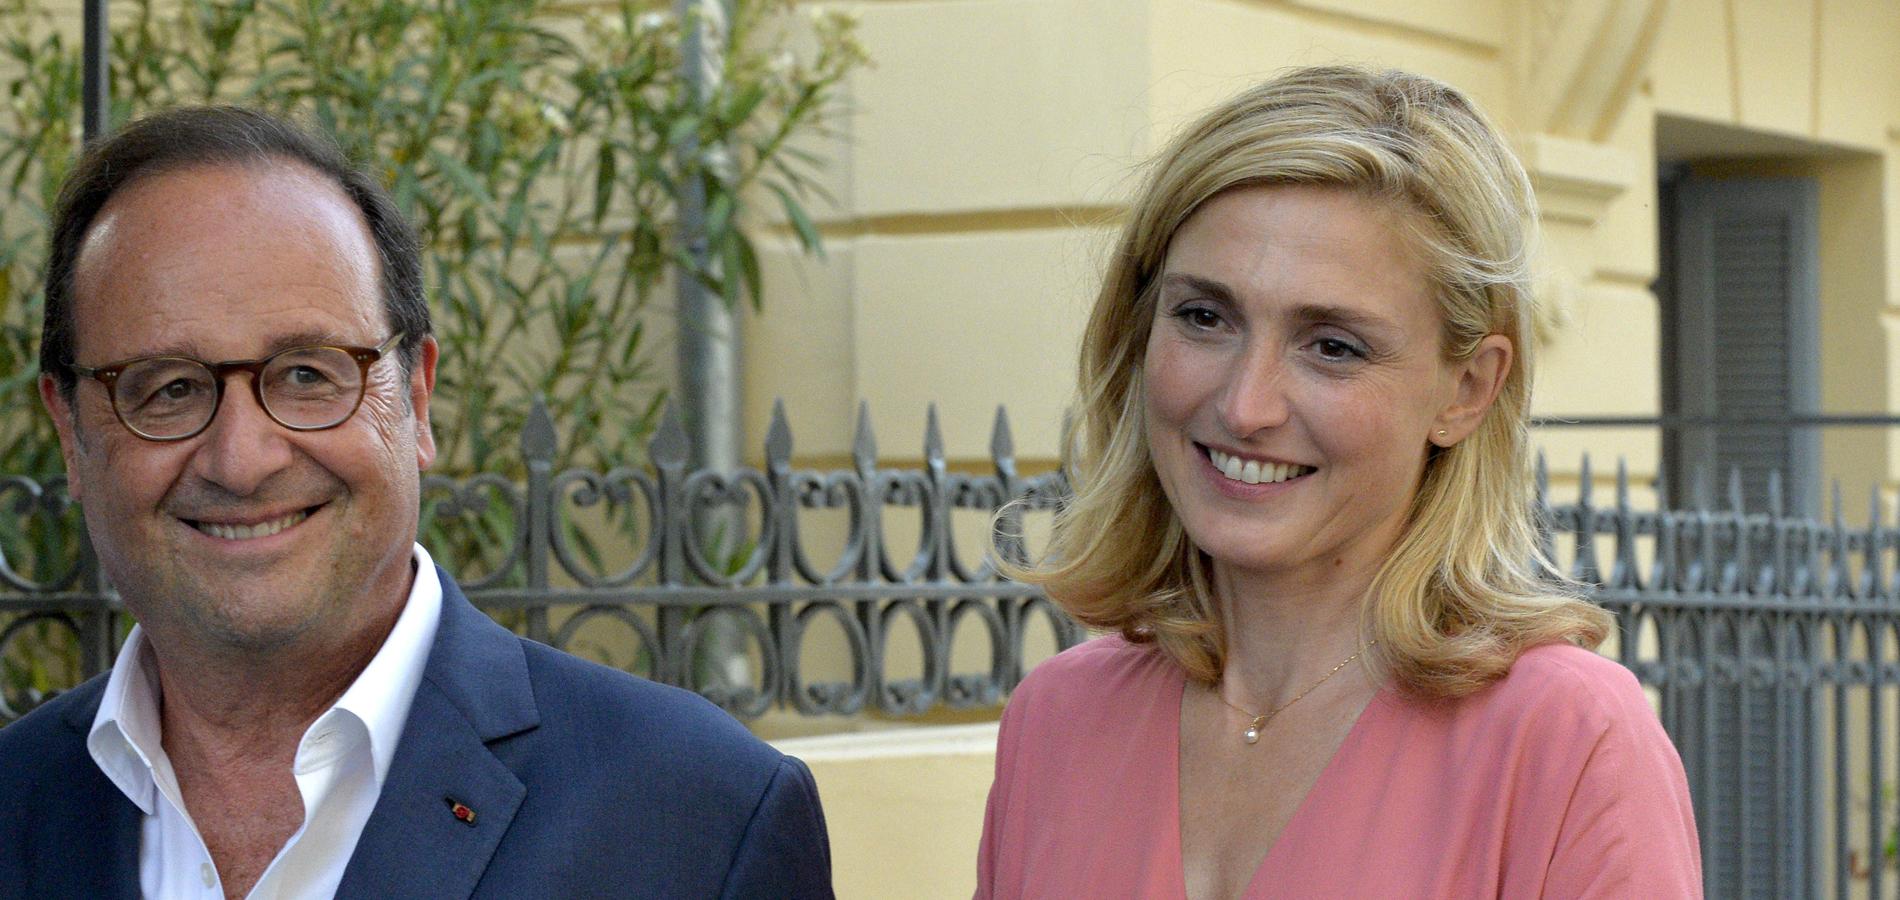 Julie Gayet sur son couple avec François Hollande : "J’ai toujours essayé d’être discrète"